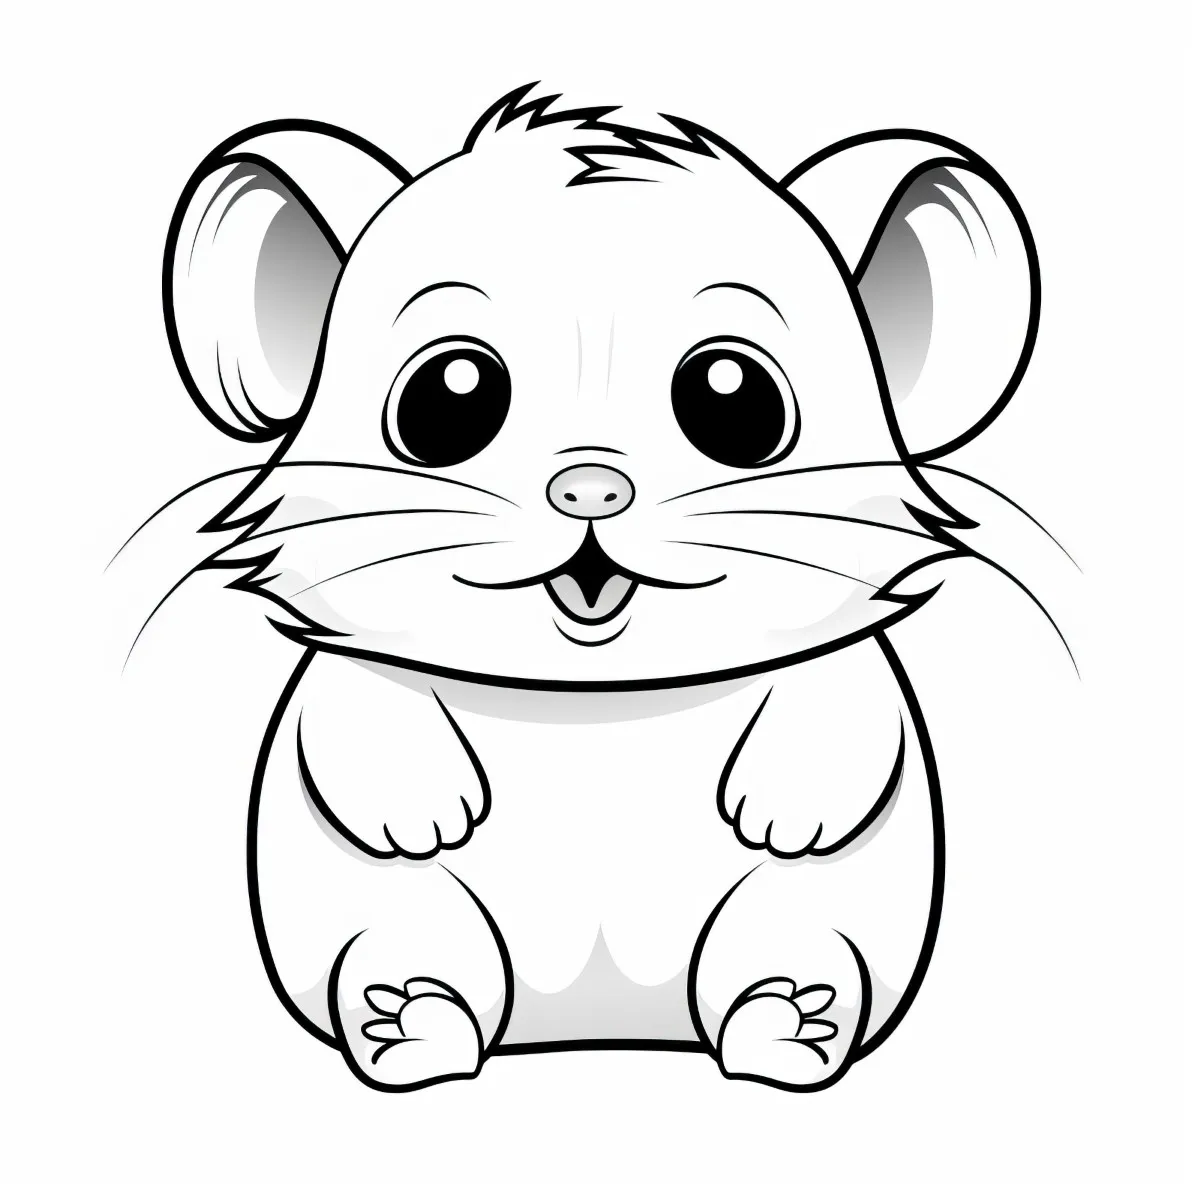 kostenloses Ausmalbild für Kinder Hamster